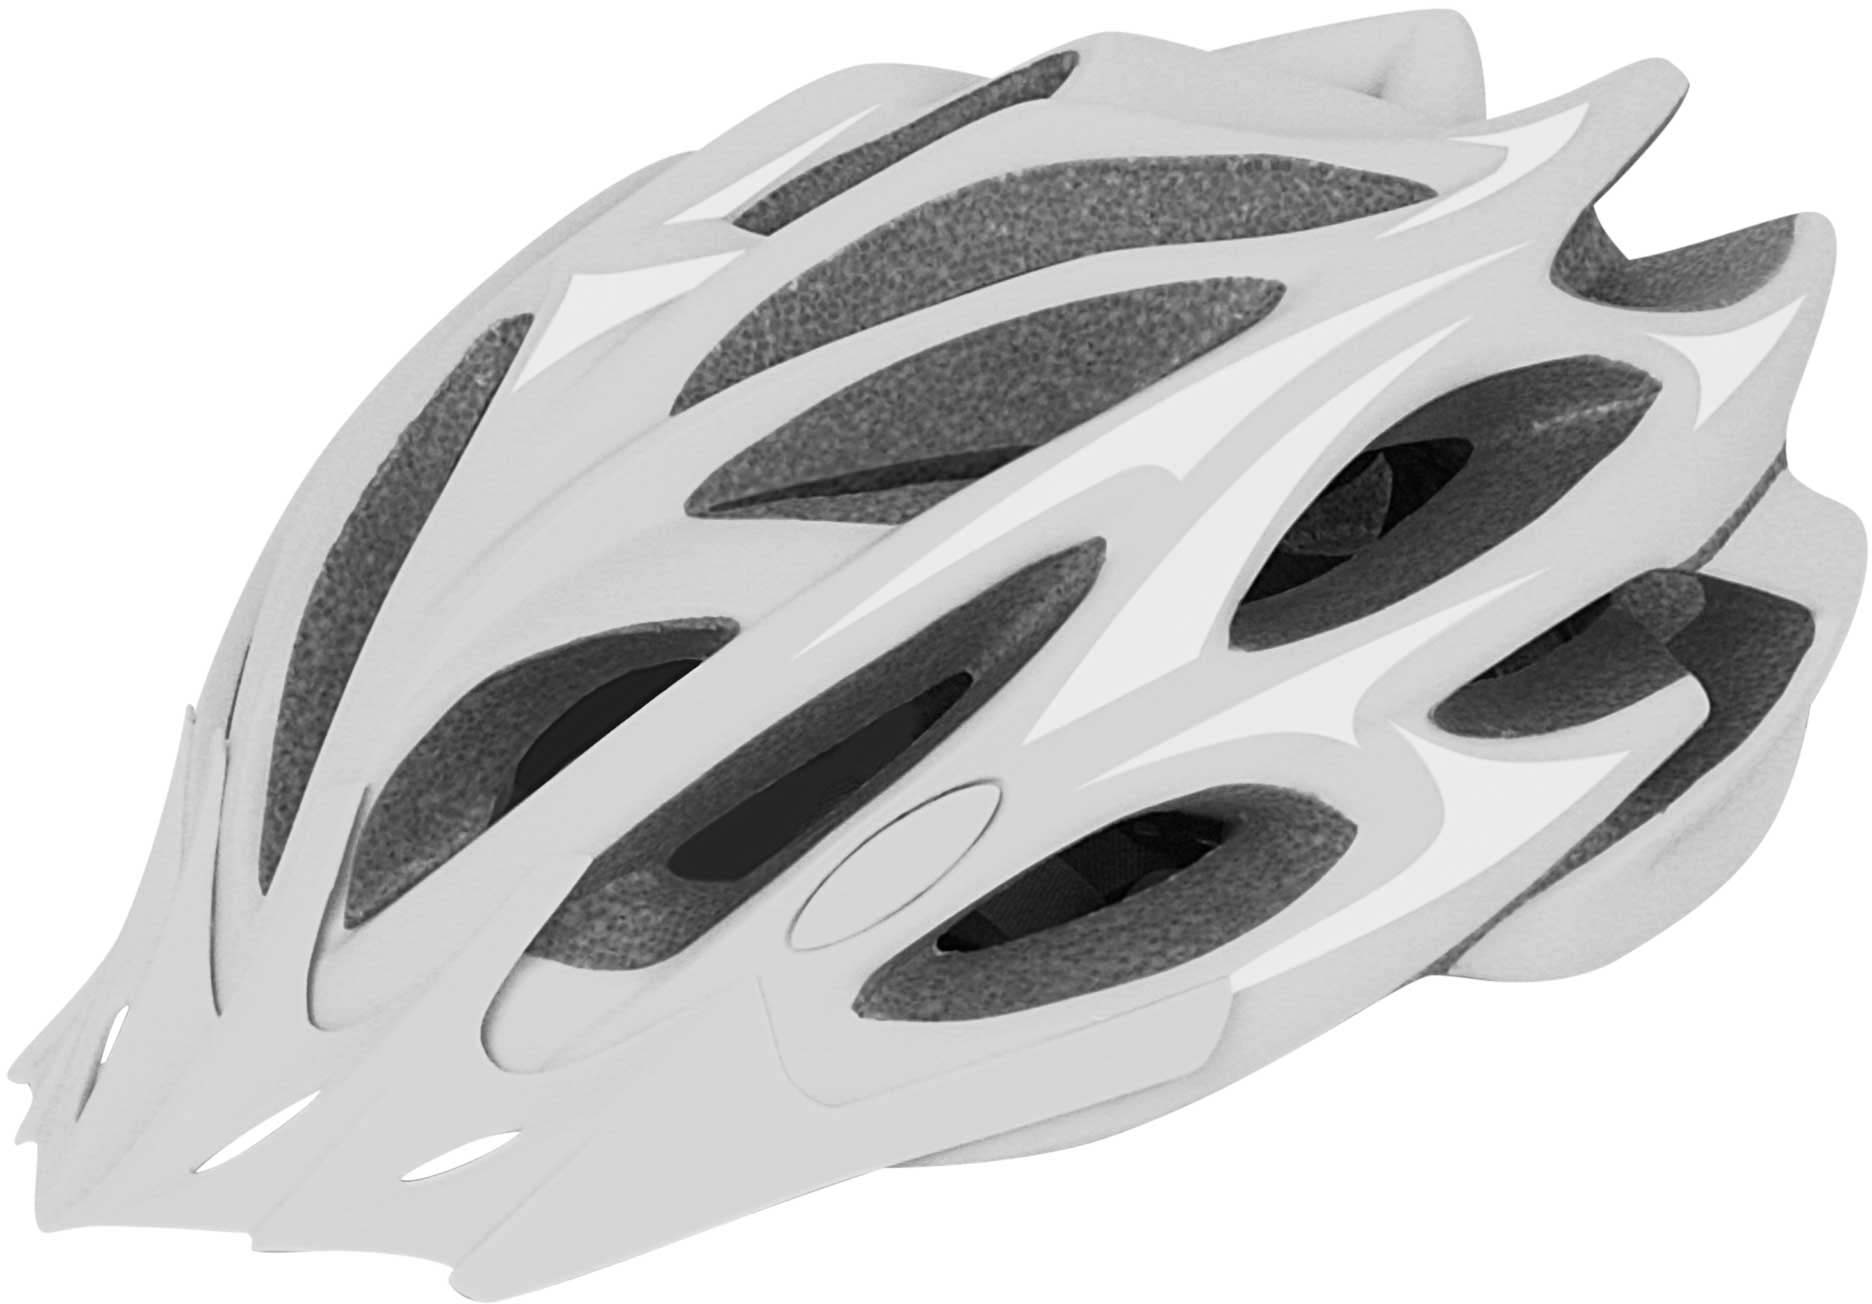 BLAST - Bicycle helmet